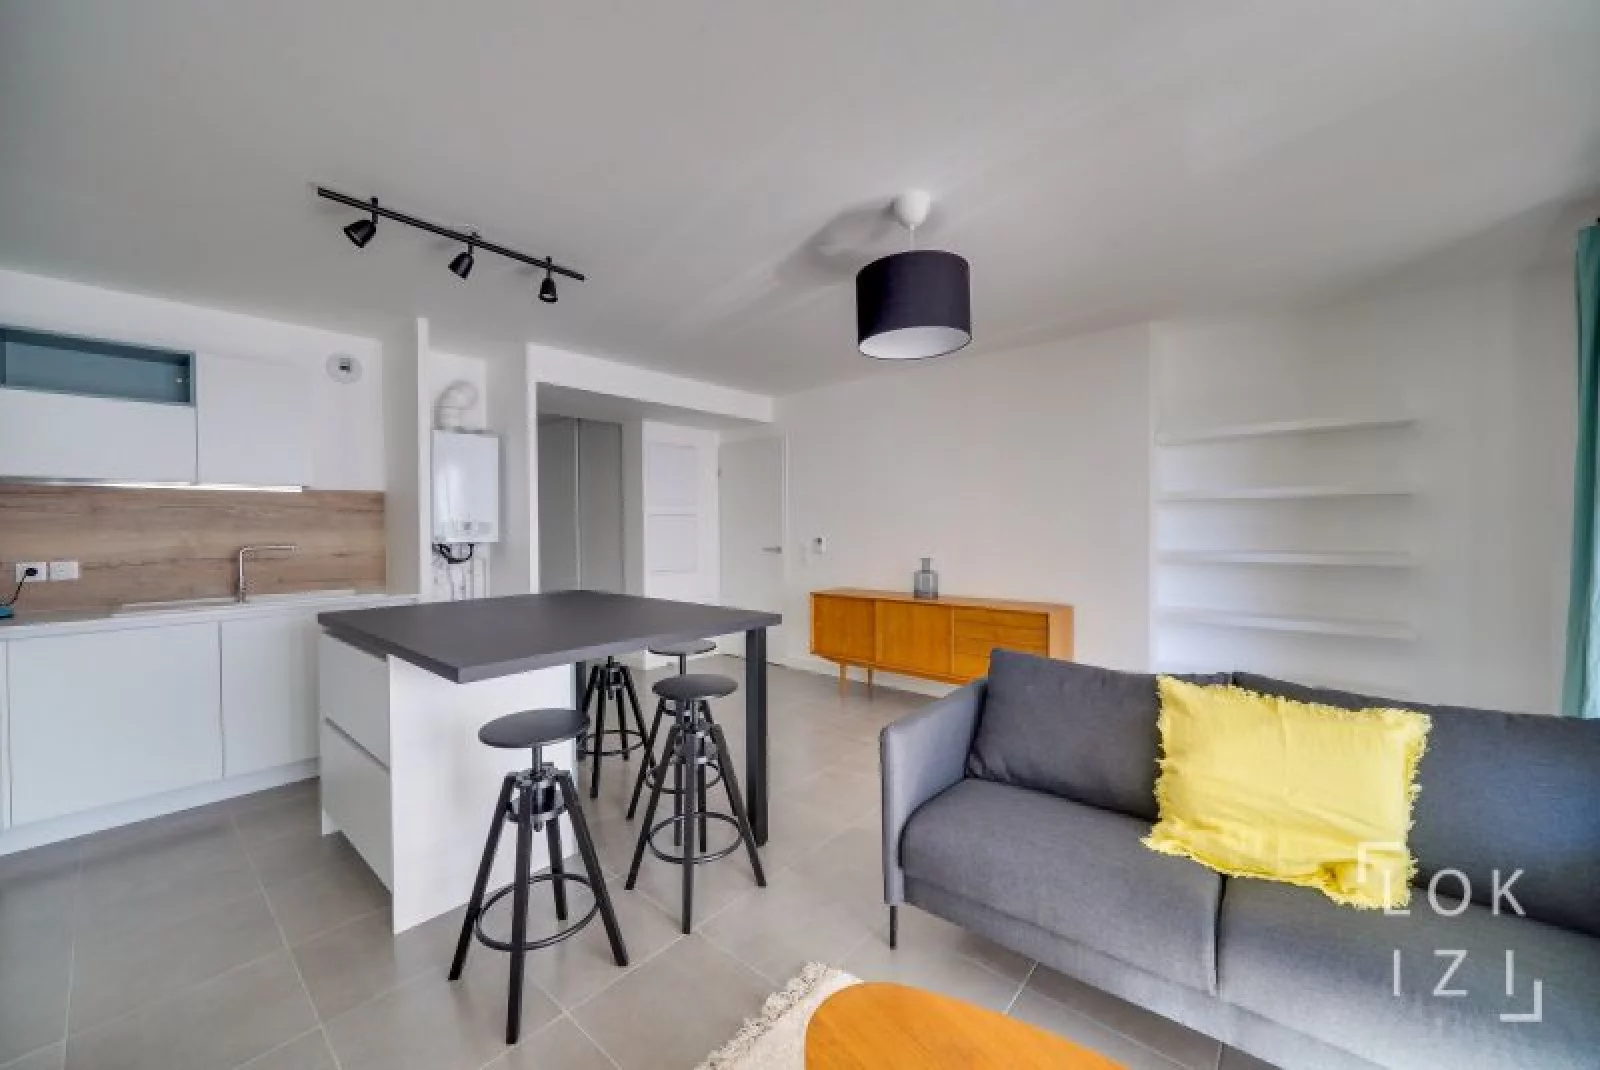 Location appartement meublé 3 pièces 67m² (Bordeaux - Bacalan)